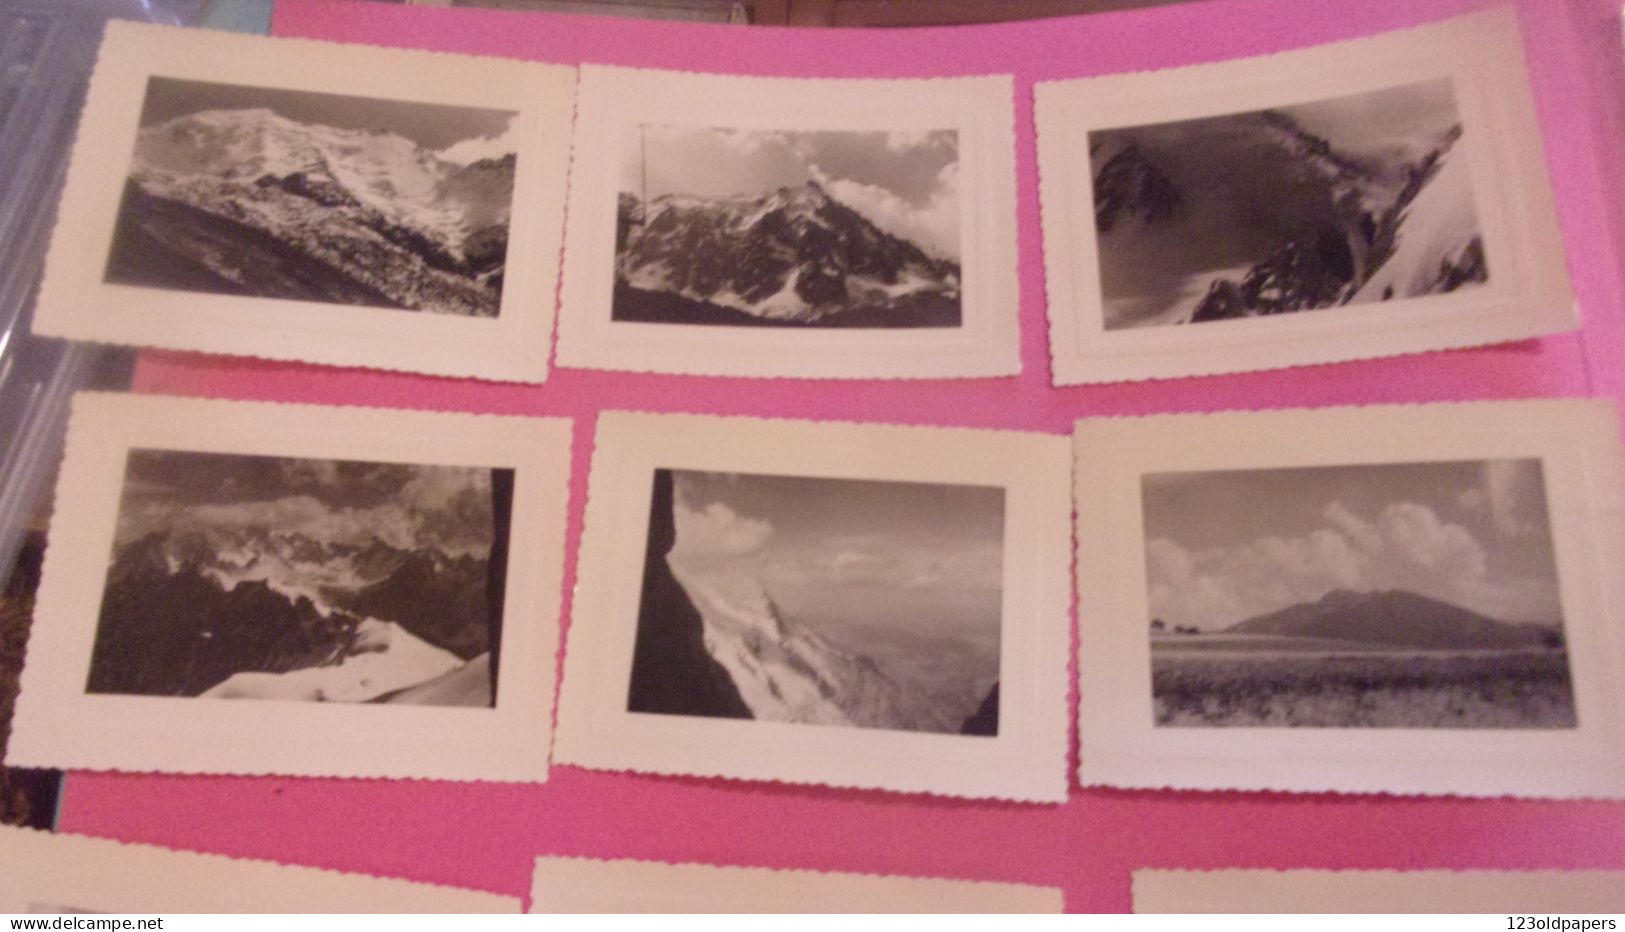 ENSEMBLE DE 24 PHOTOS AMATEUR DE 1957 CHAMONIX  LE BARGY LES BORNES GOULET BOSSONS LEGENDEES - Chamonix-Mont-Blanc